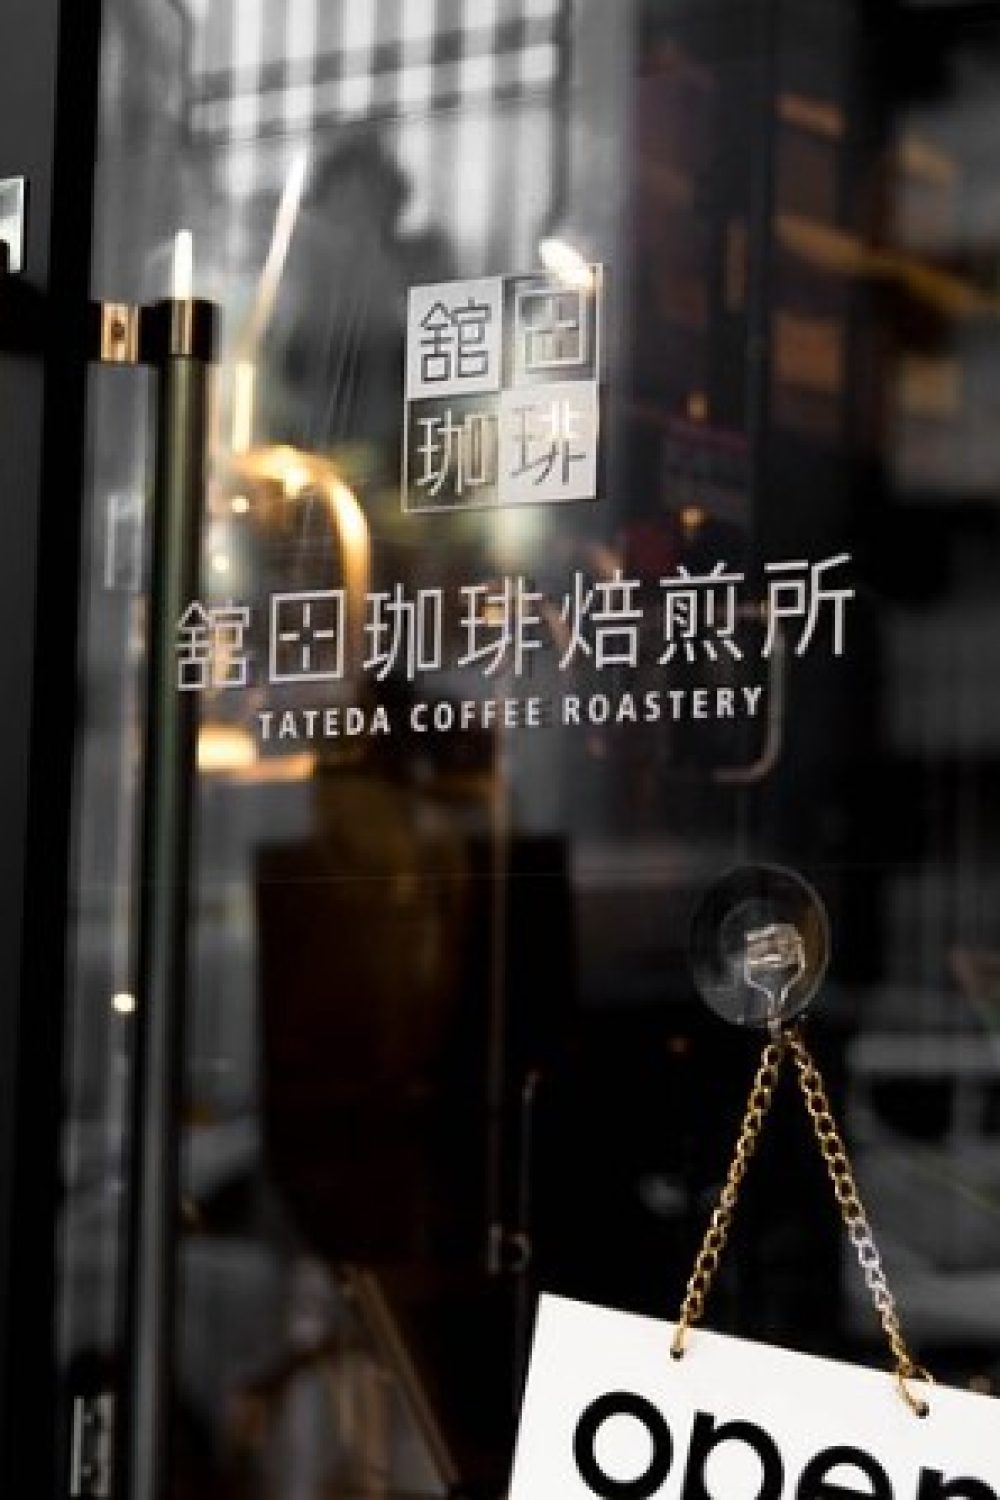 tateda coffee roastery door